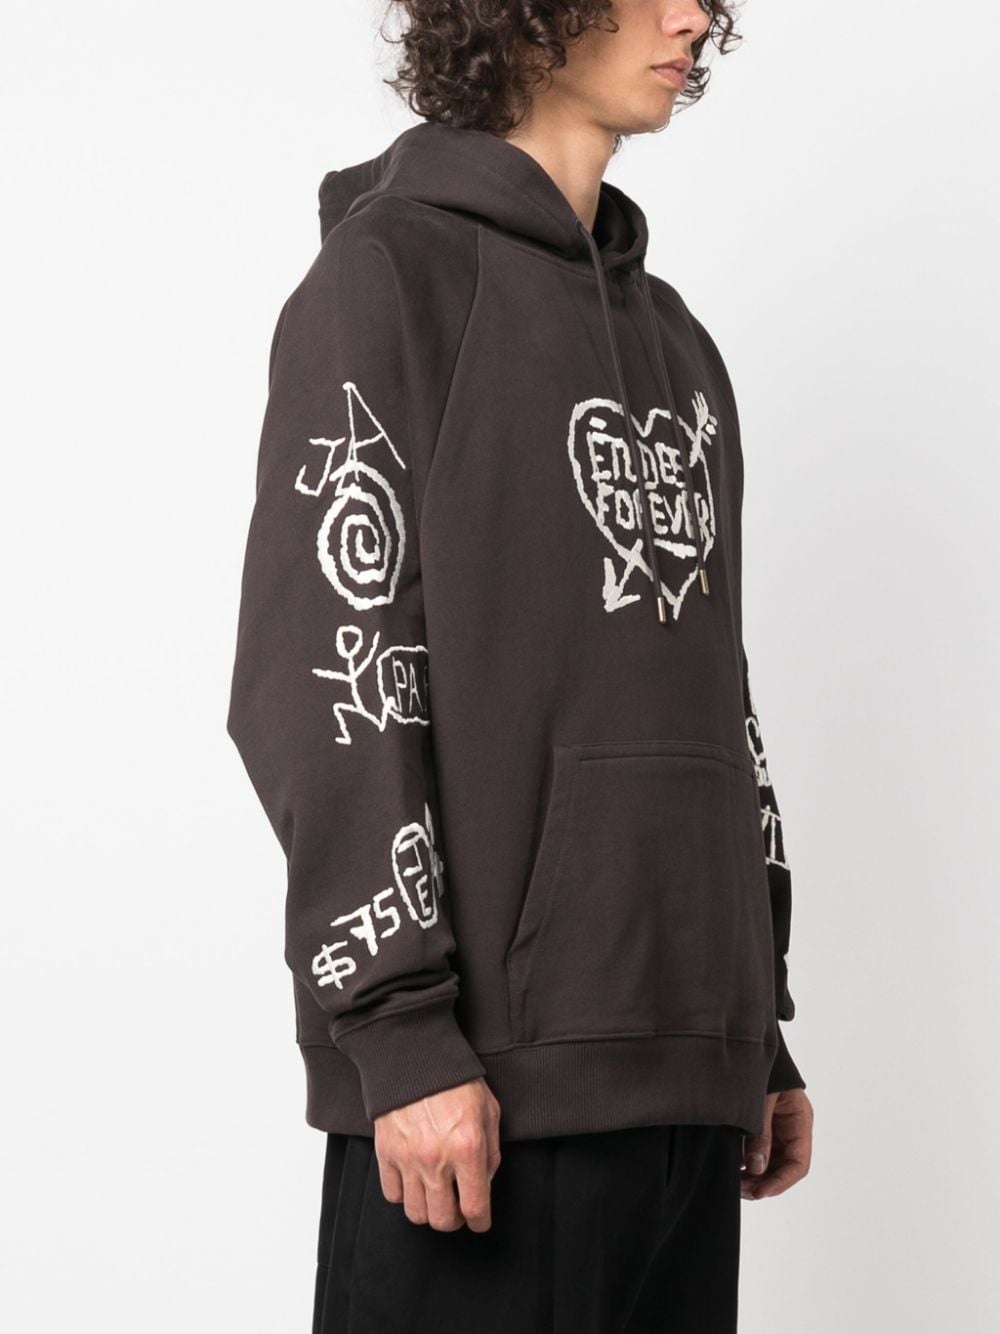 graffiti-embroidery organic cotton hoodie - 4